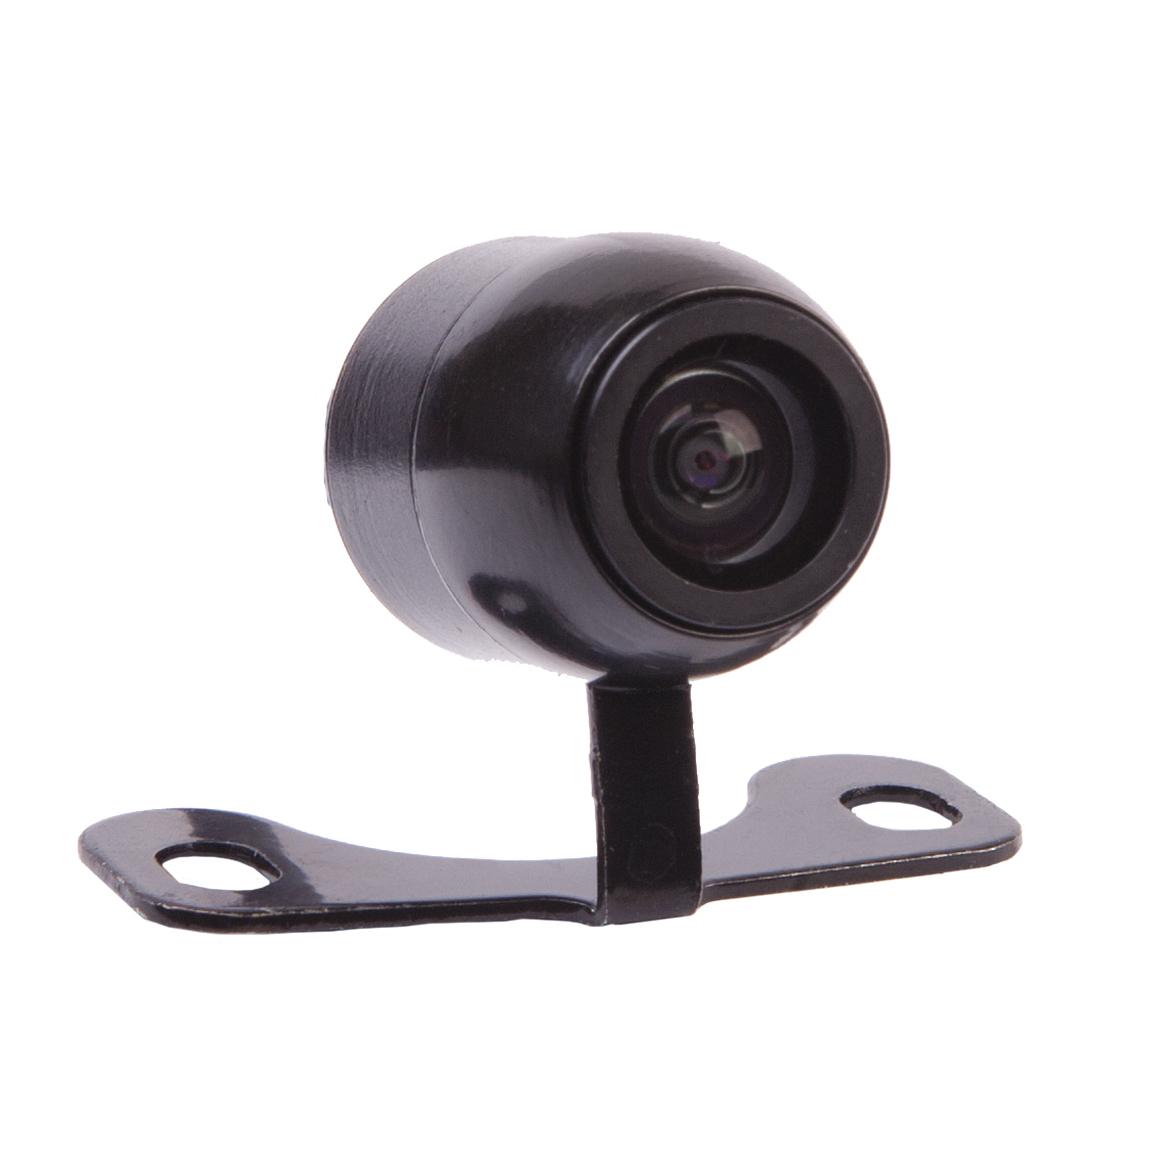 Камера заднего вида Prology RVC-140 95760 2p600 957602p600 камера заднего вида для kia sorento 2014 2015 камера заднего вида для помощи при парковке резервная камера